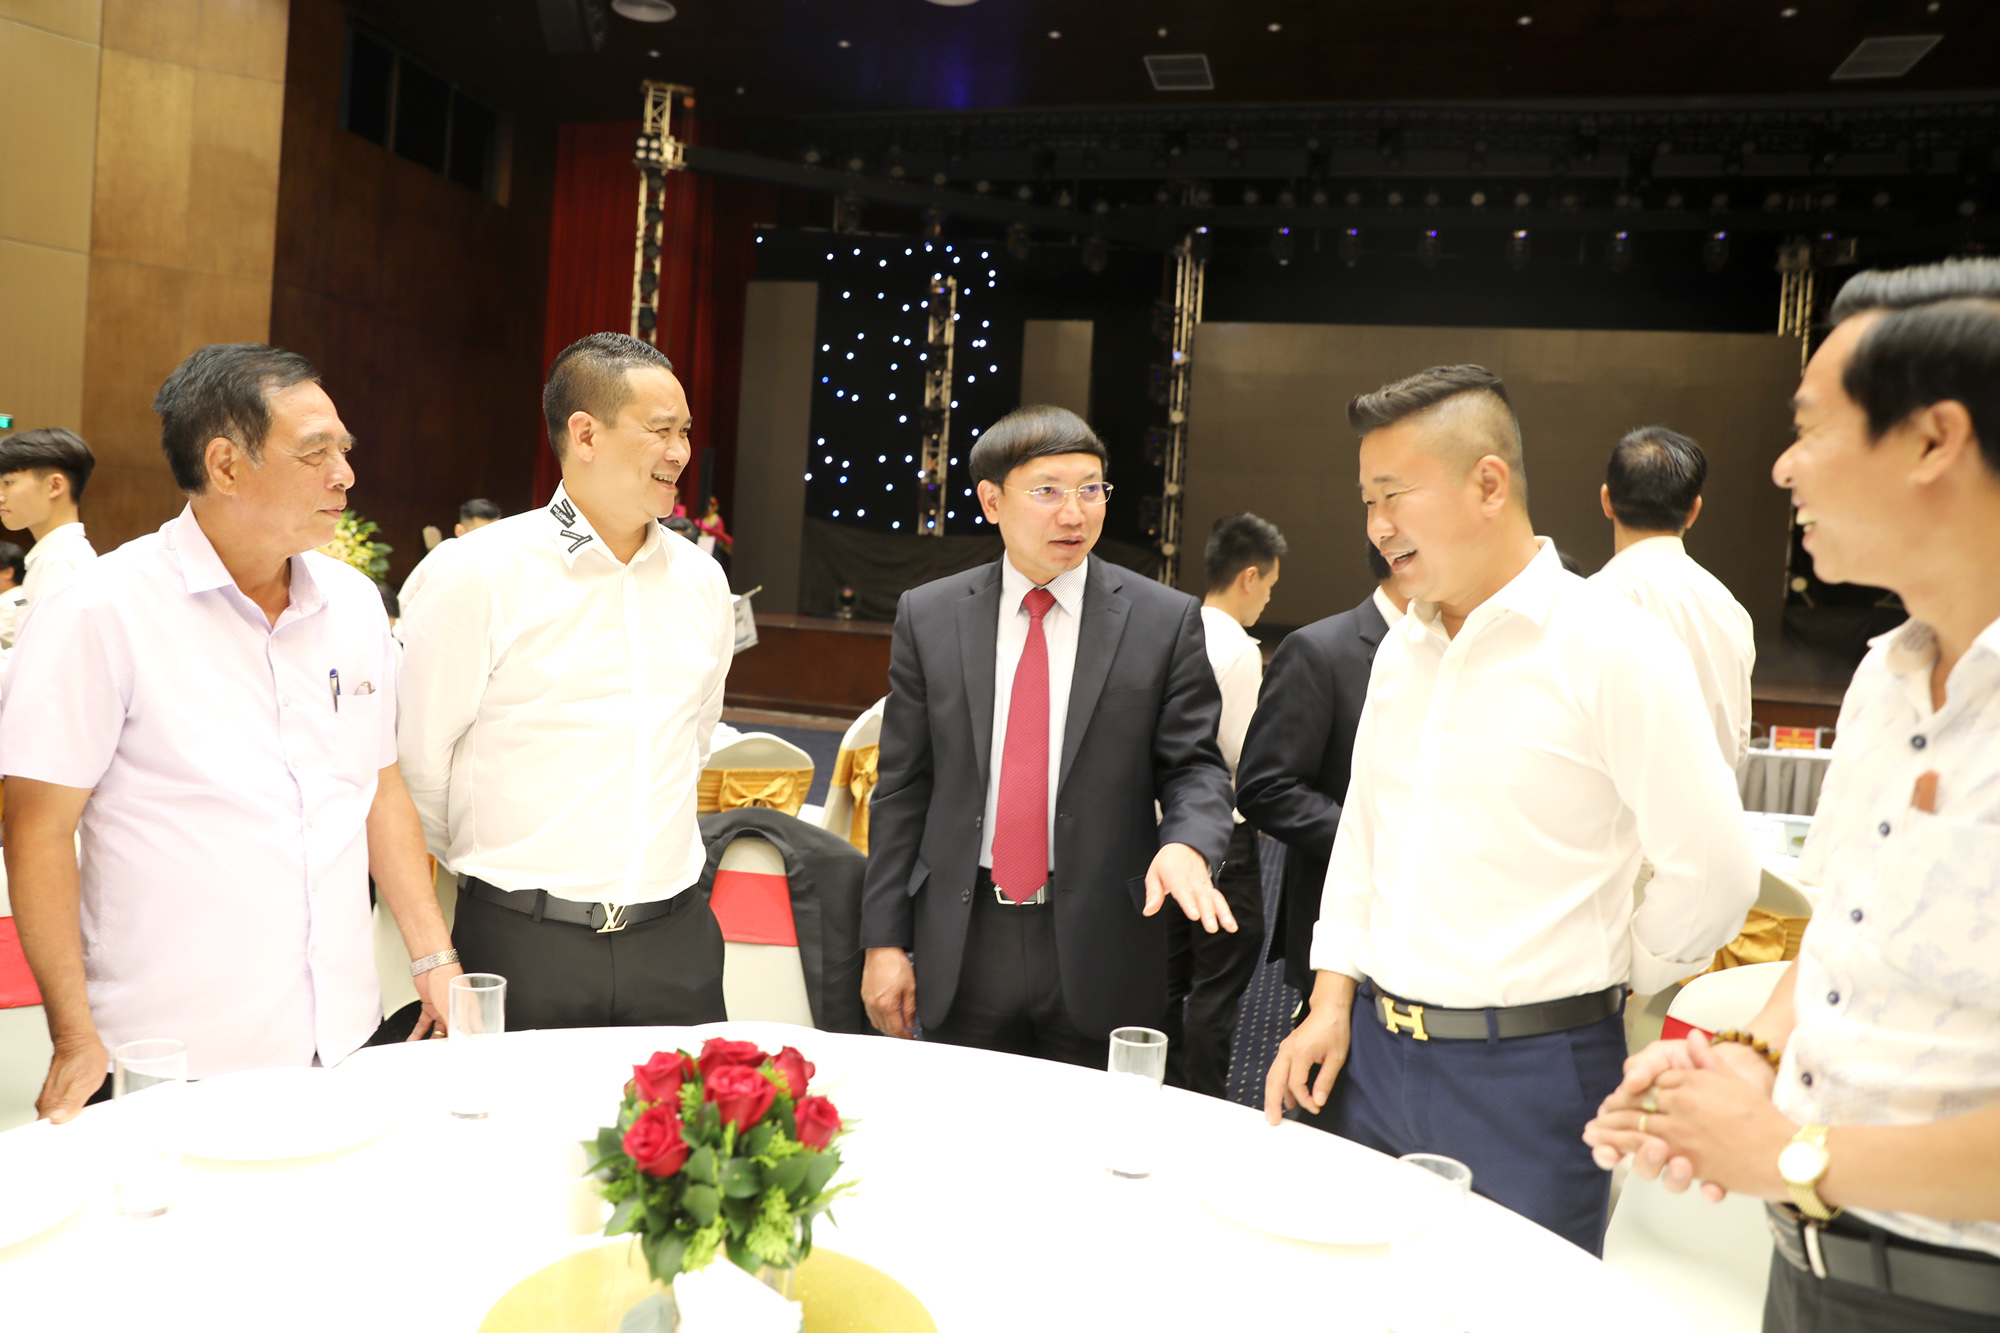 Đồng chí Nguyễn Xuân Ký, Bí thư Tỉnh ủy, Chủ tịch HĐND tỉnh, trò chuyện với các doanh nghiệp tại Hội nghị tiếp xúc doanh nghiệp quý III/2019.